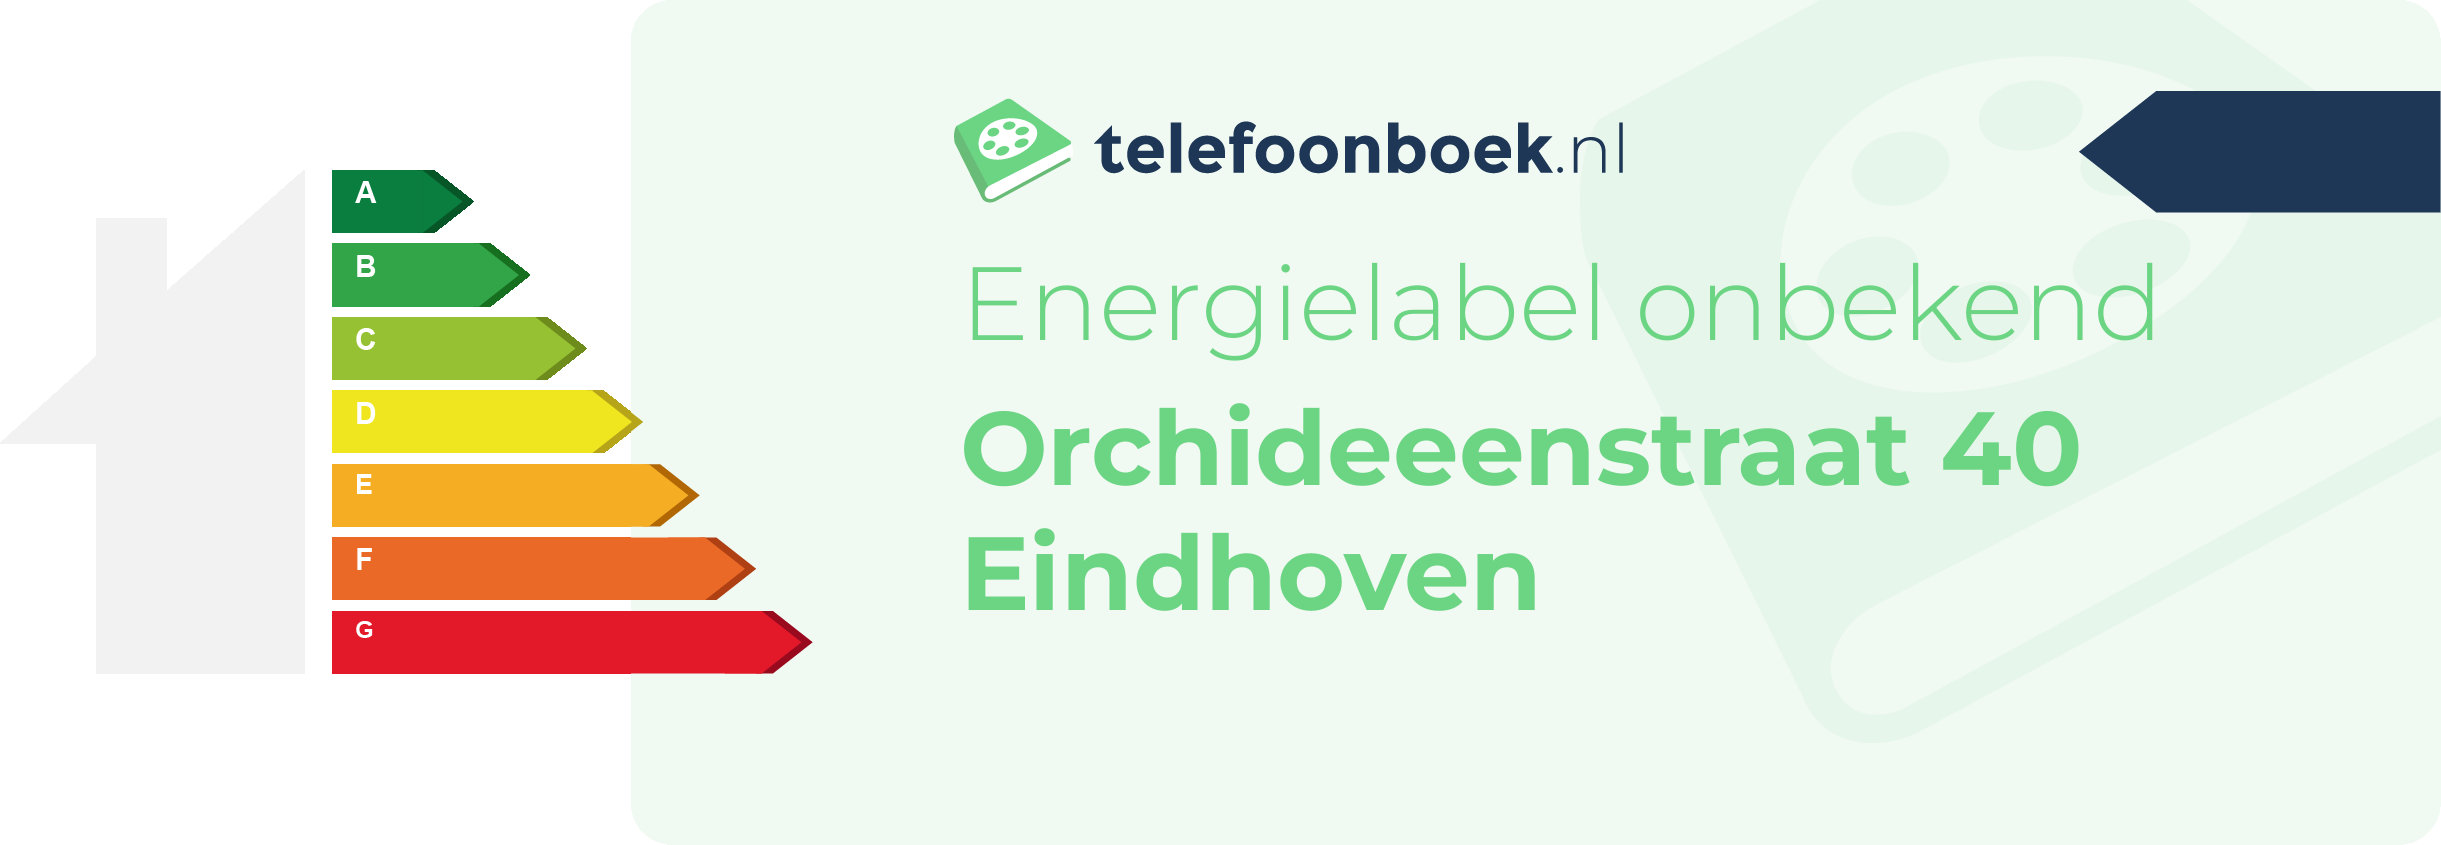 Energielabel Orchideeenstraat 40 Eindhoven